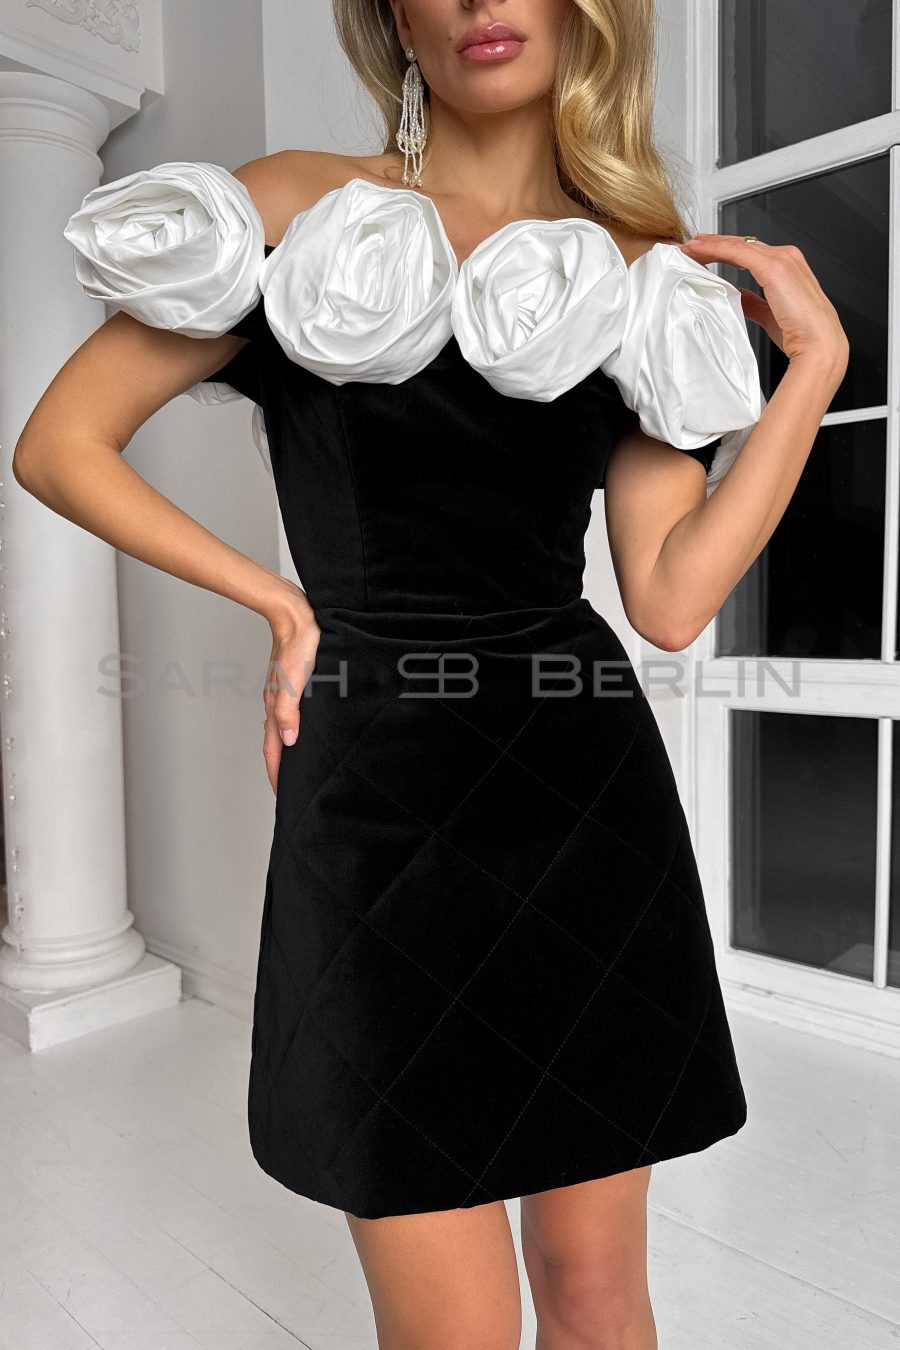 Платье выше колен из итальянского бархата, с открытыми плечами, с белыми розами